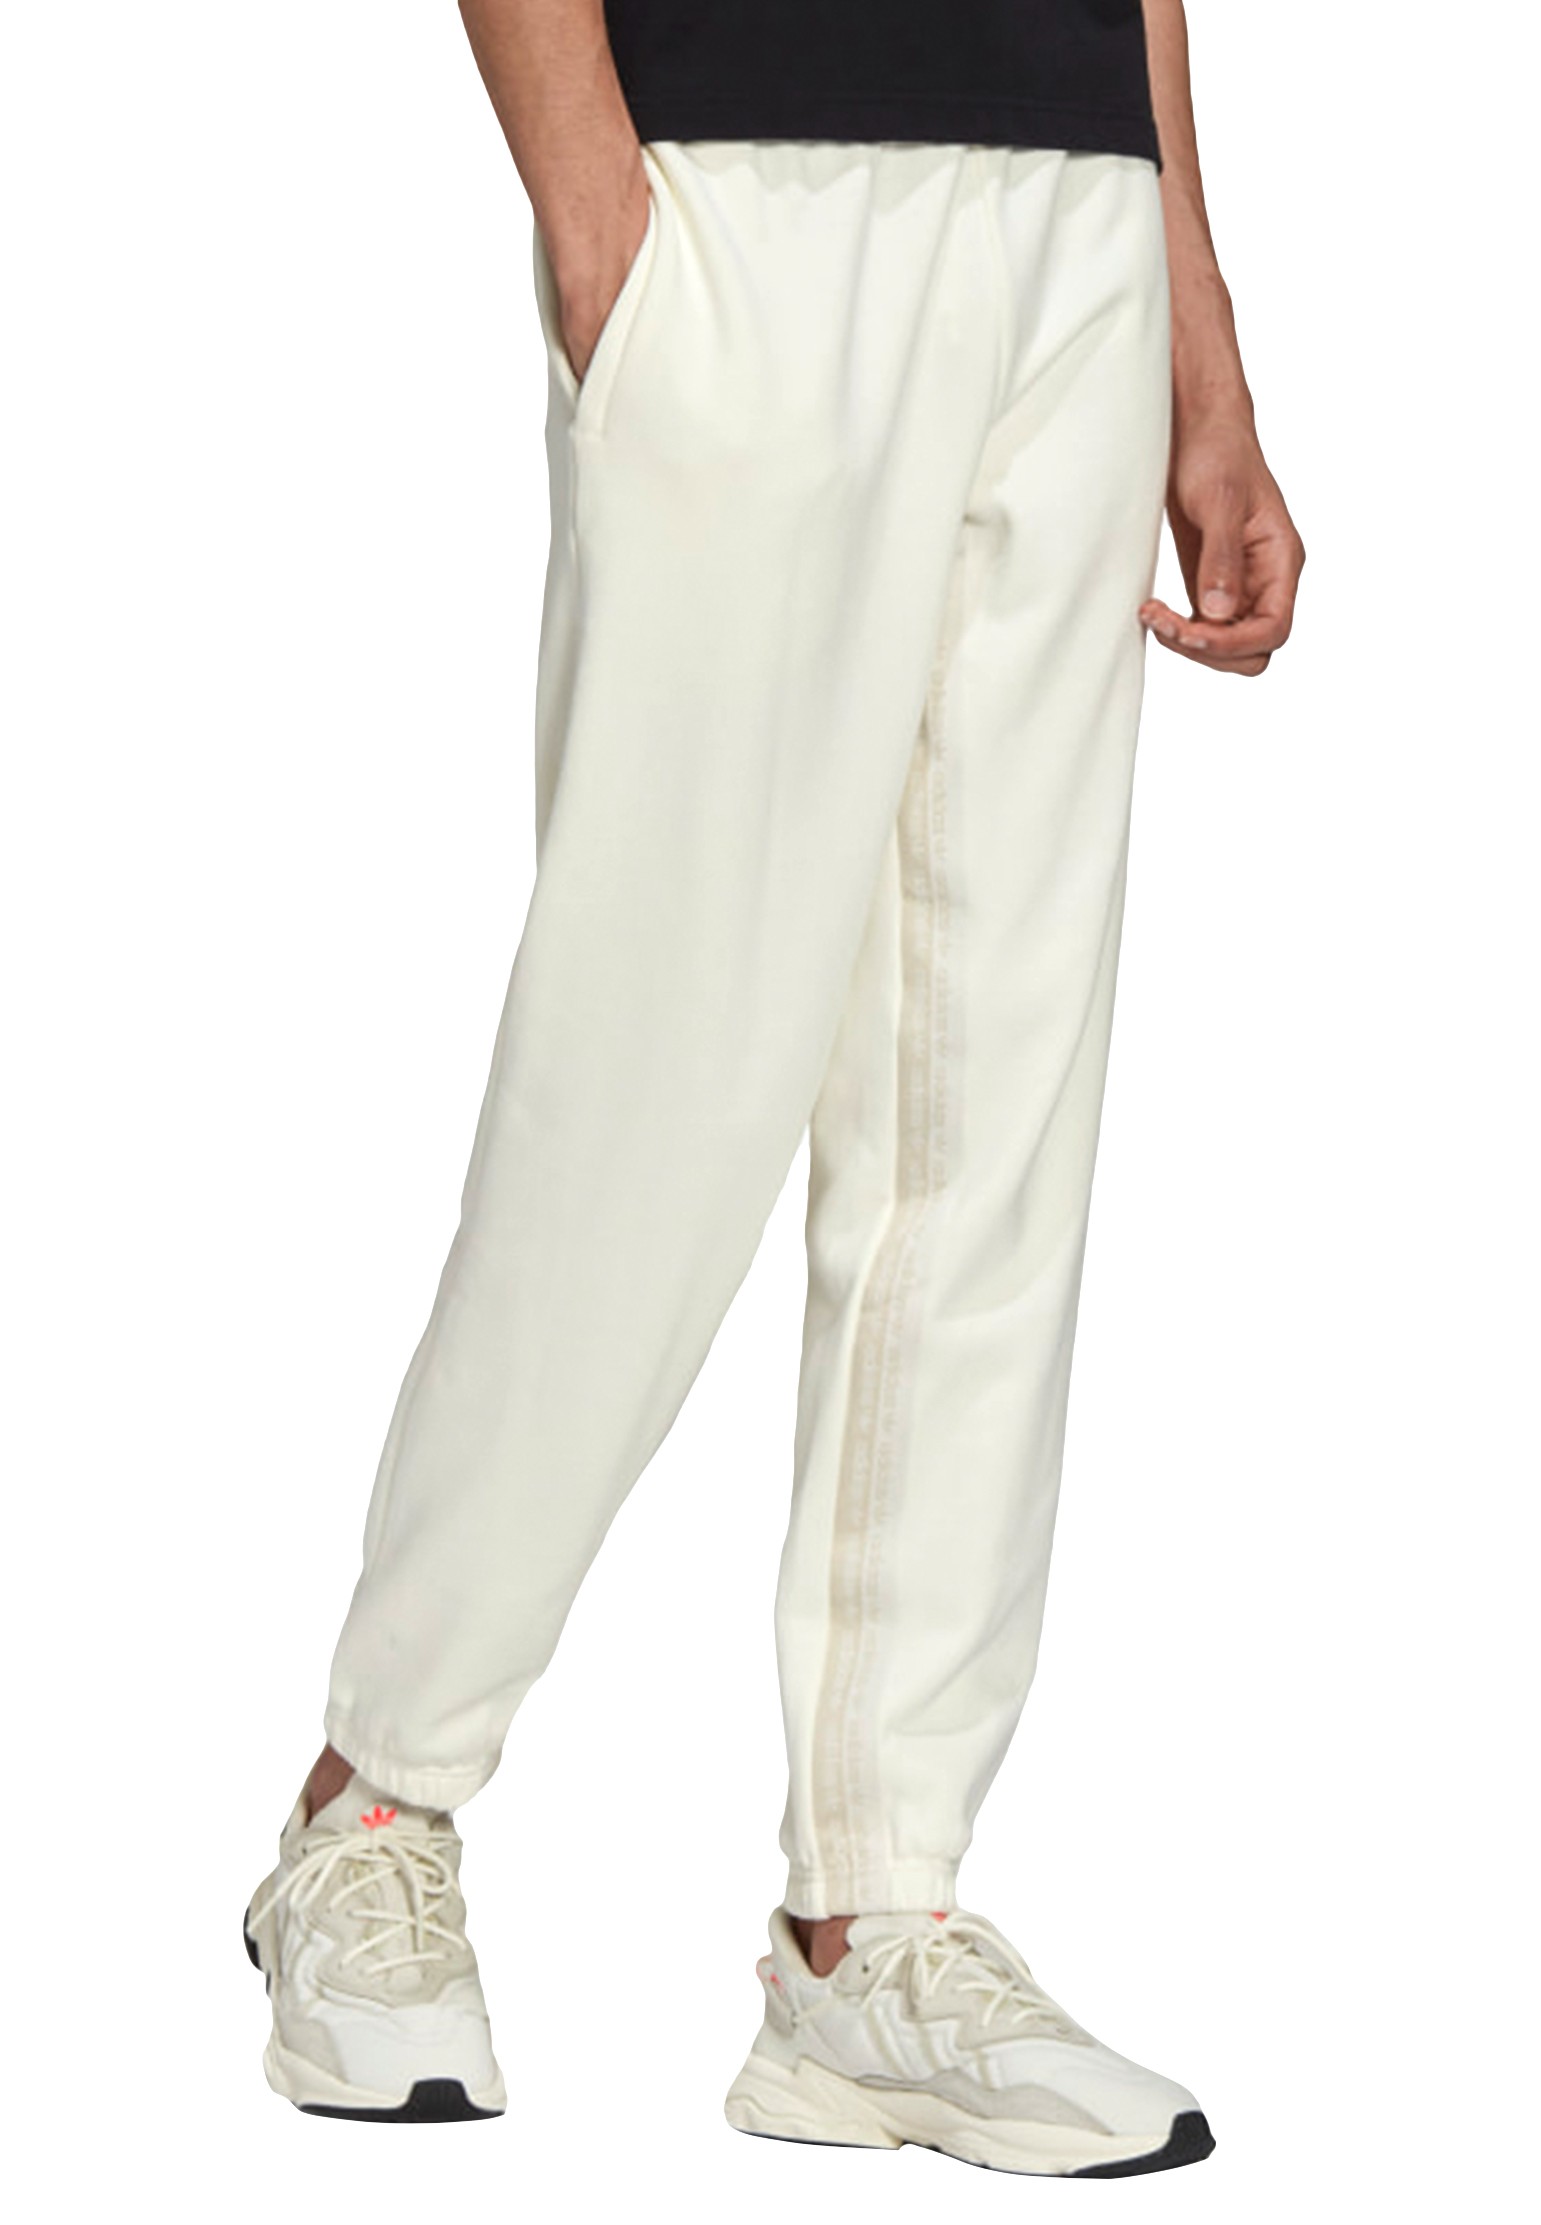 Спортивные брюки мужские Adidas 136516 белые XL